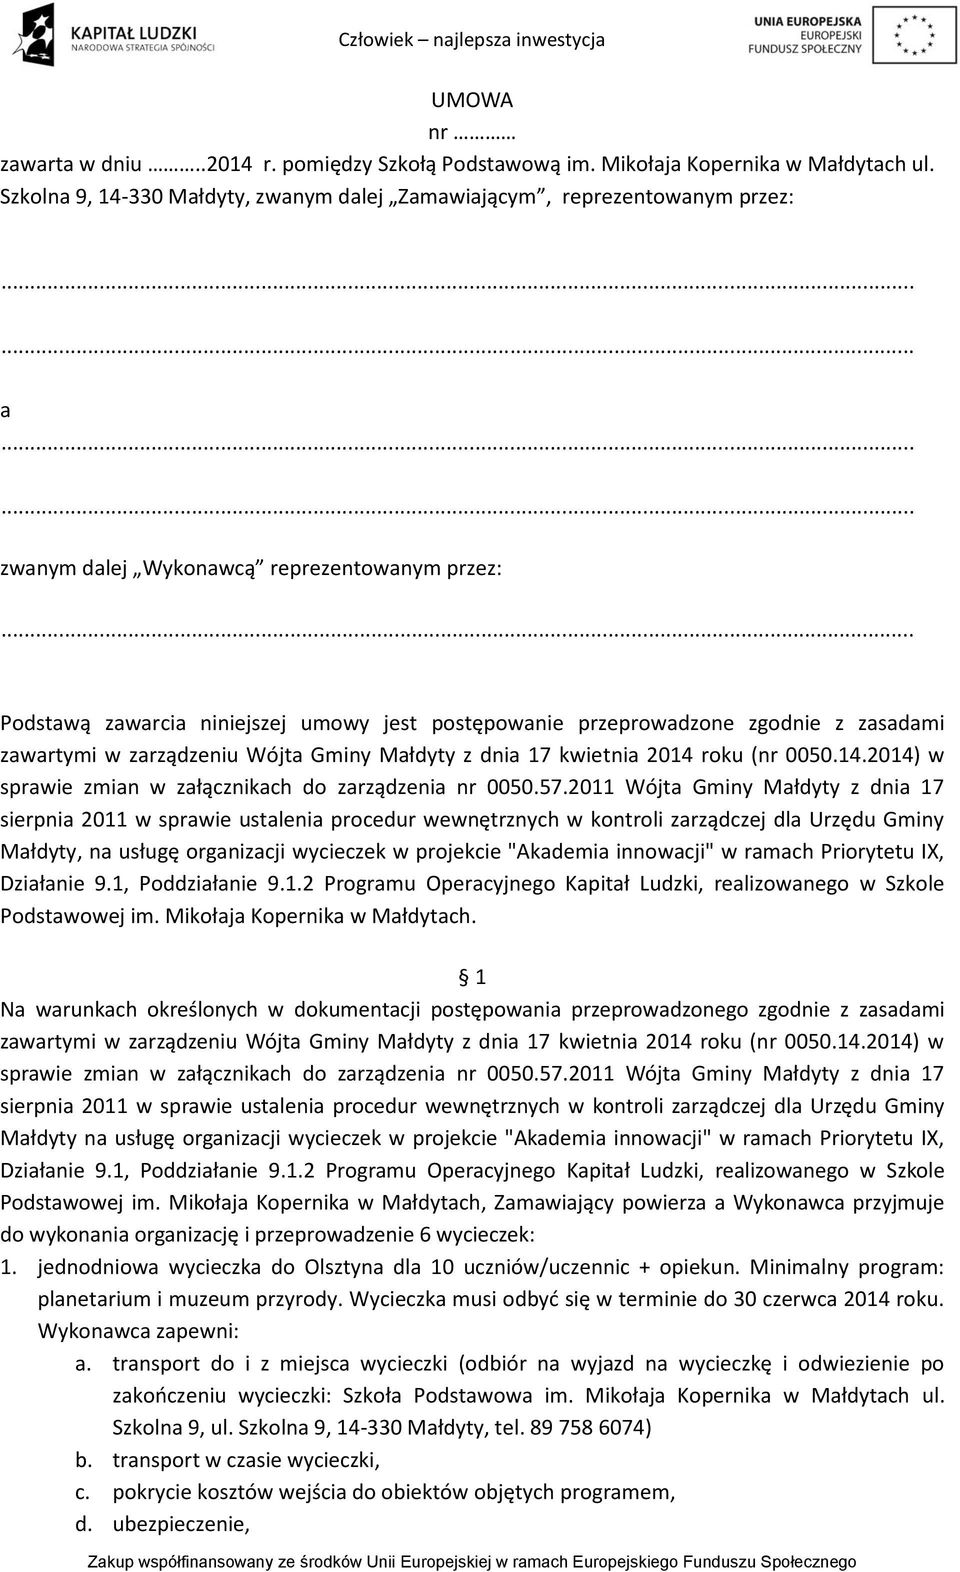 zgodnie z zasadami zawartymi w zarządzeniu Wójta Gminy Małdyty z dnia 17 kwietnia 2014 roku (nr 0050.14.2014) w sprawie zmian w załącznikach do zarządzenia nr 0050.57.